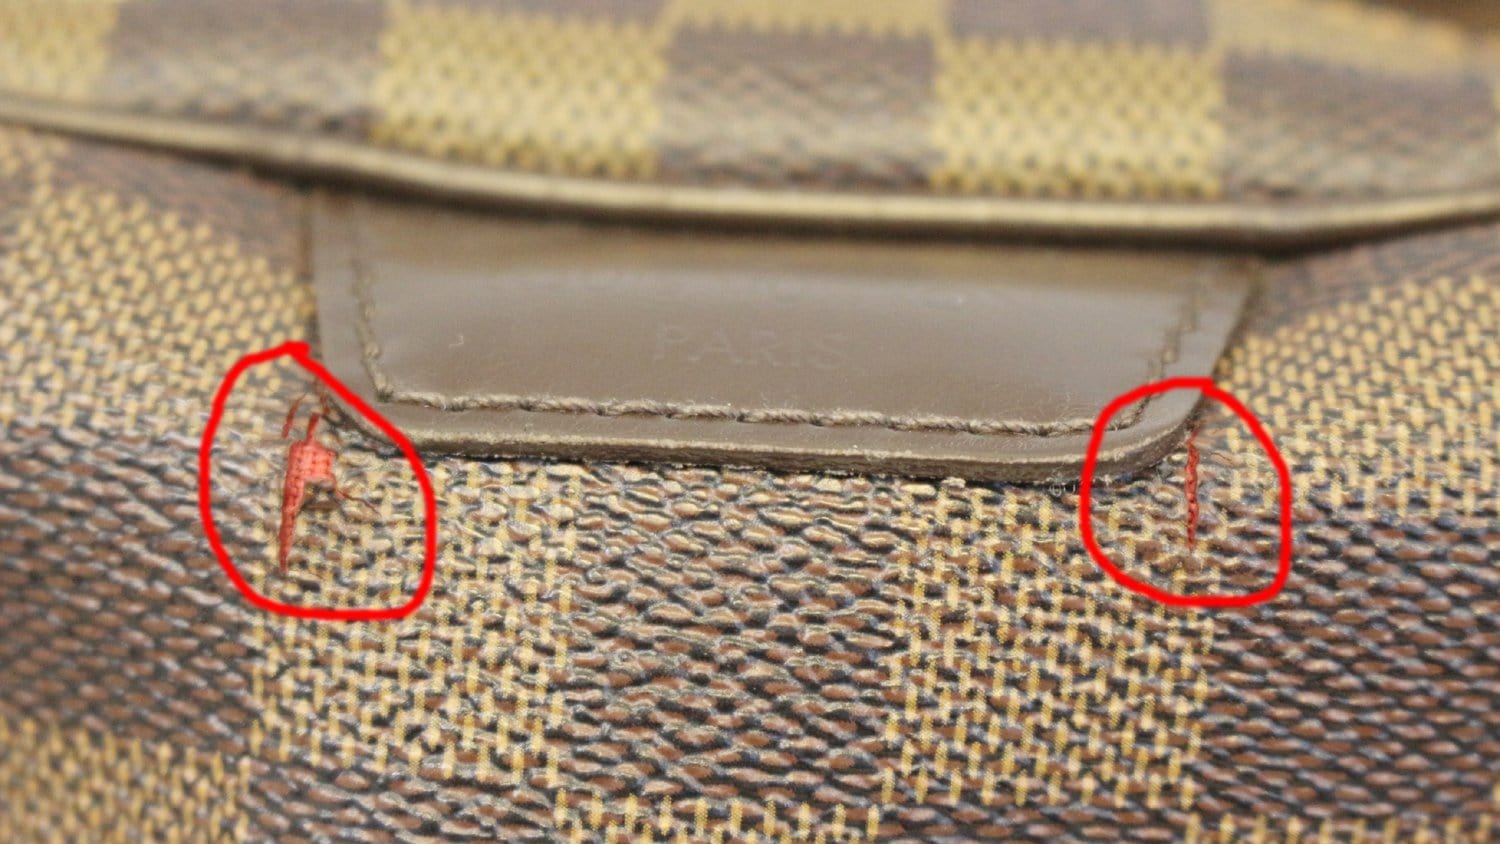 Louis Vuitton Damier Ebene Rivington PM - Brown Shoulder Bags, Handbags -  LOU762273